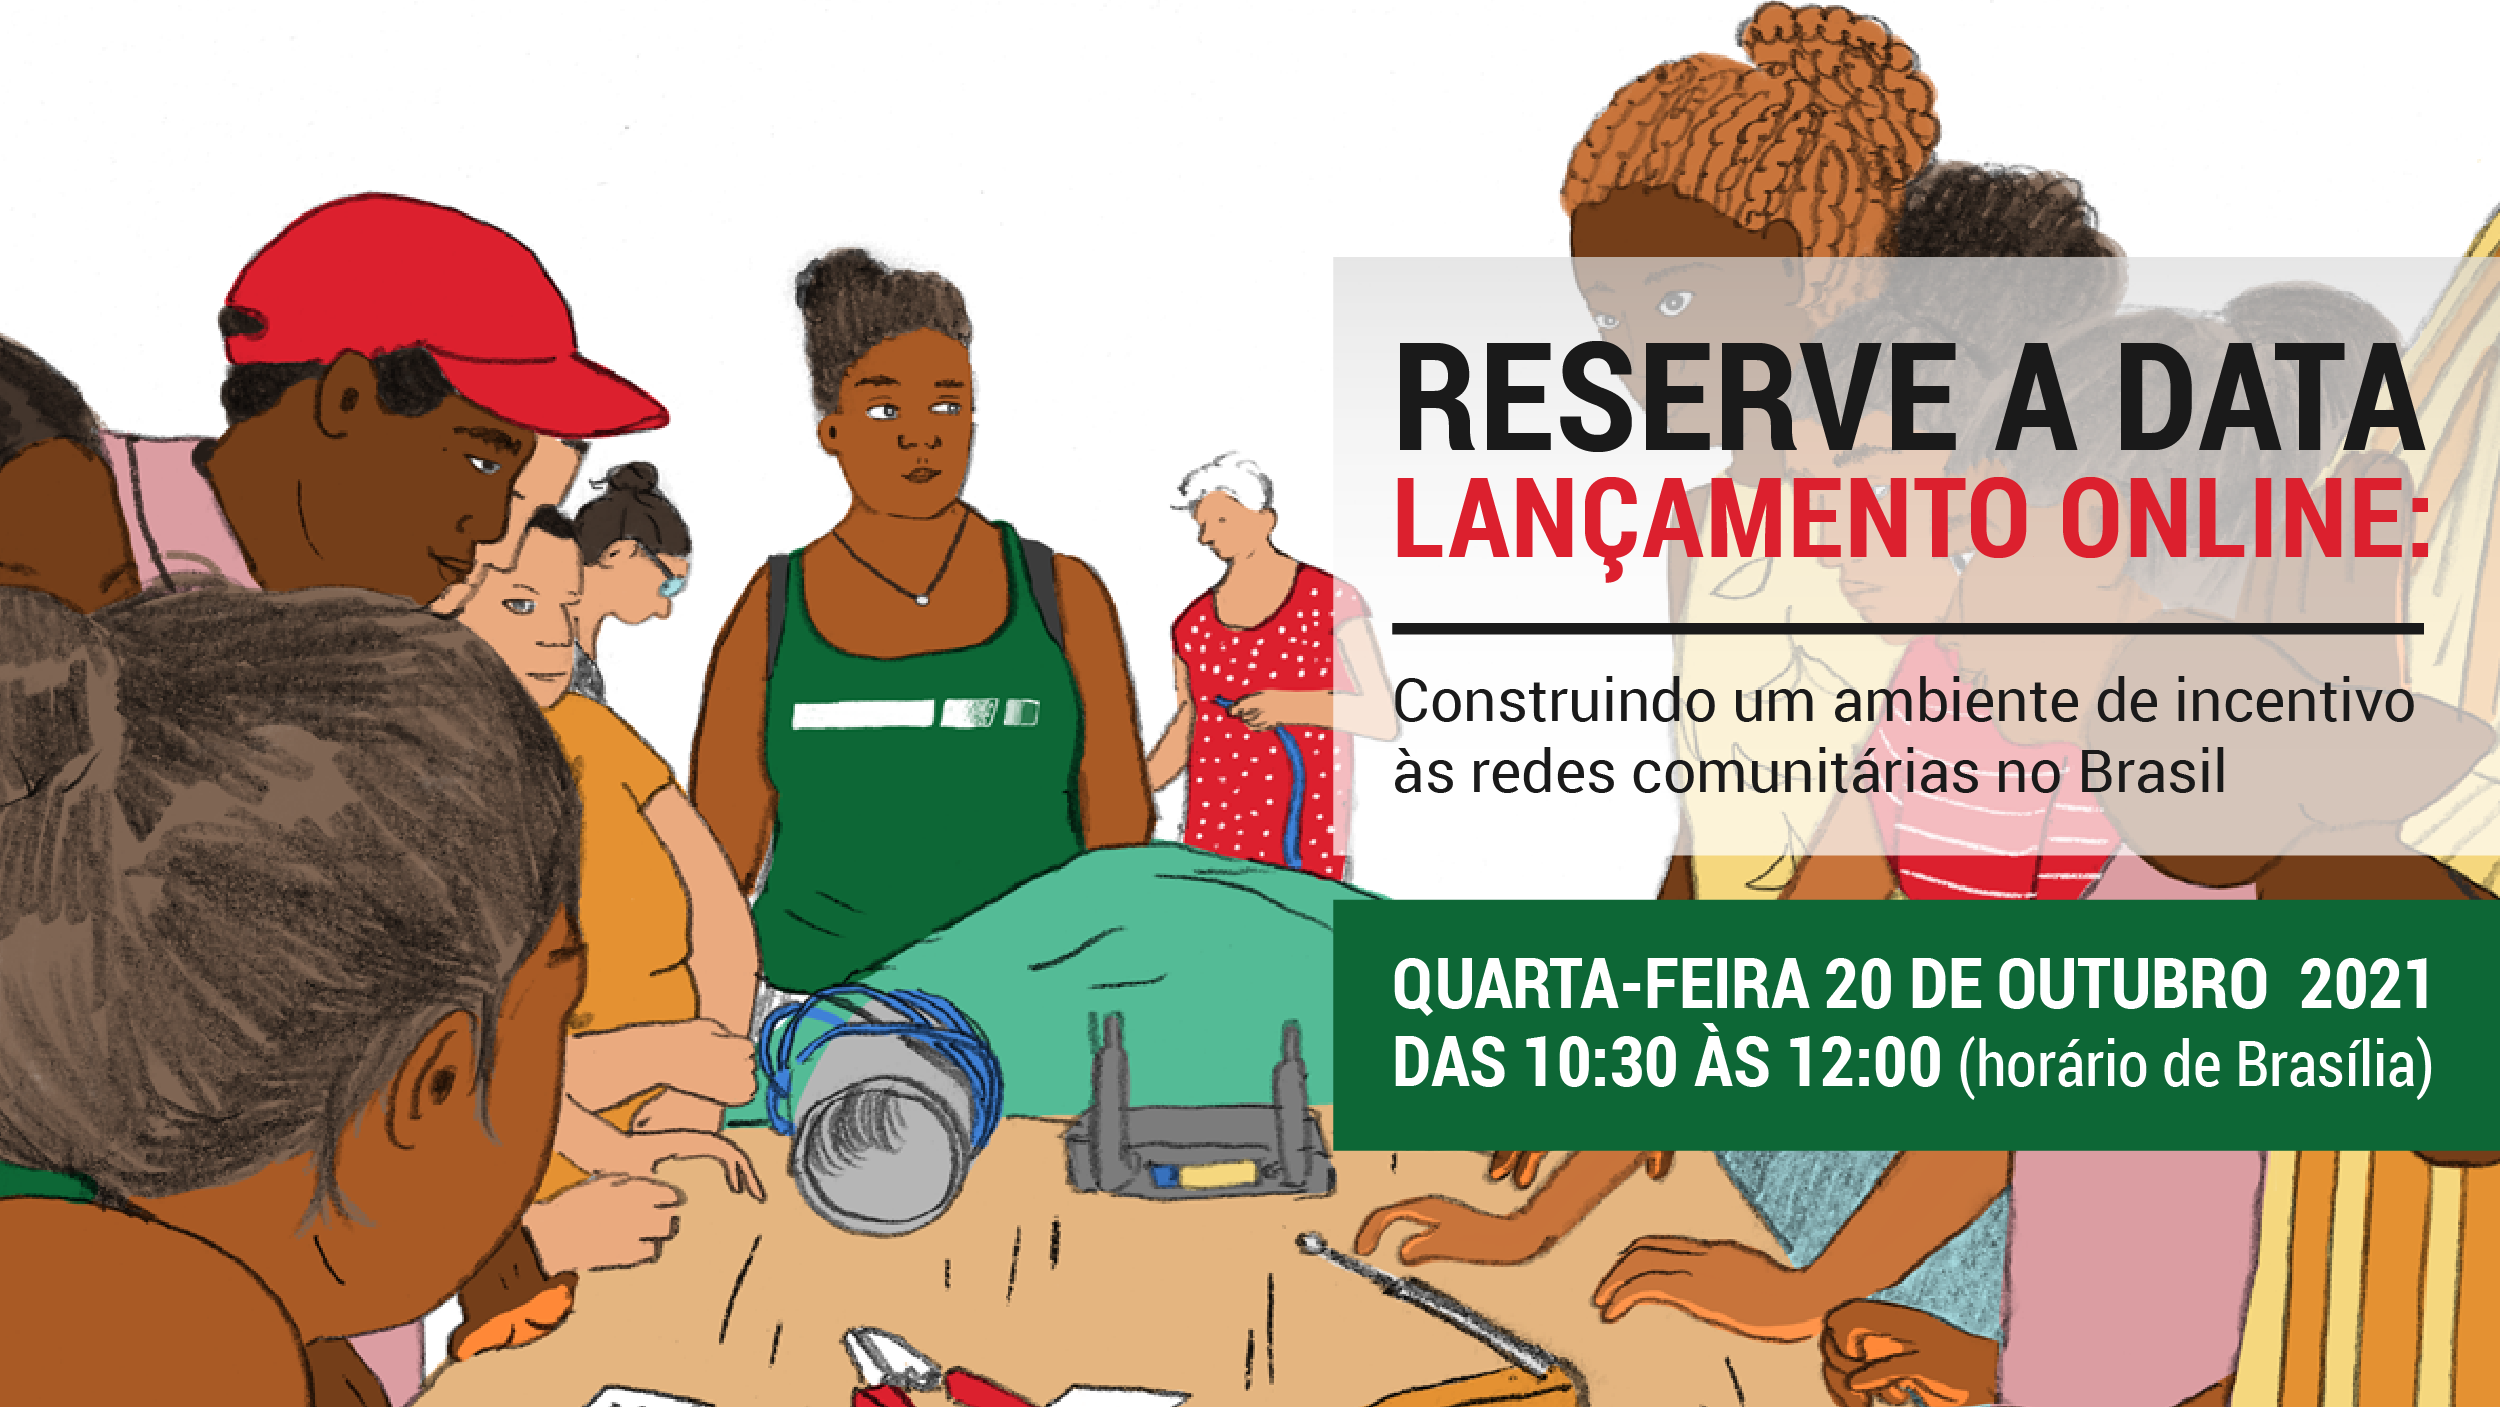 Lançamento online: Construindo um ambiente de incentivo às redes comunitárias no Brasil